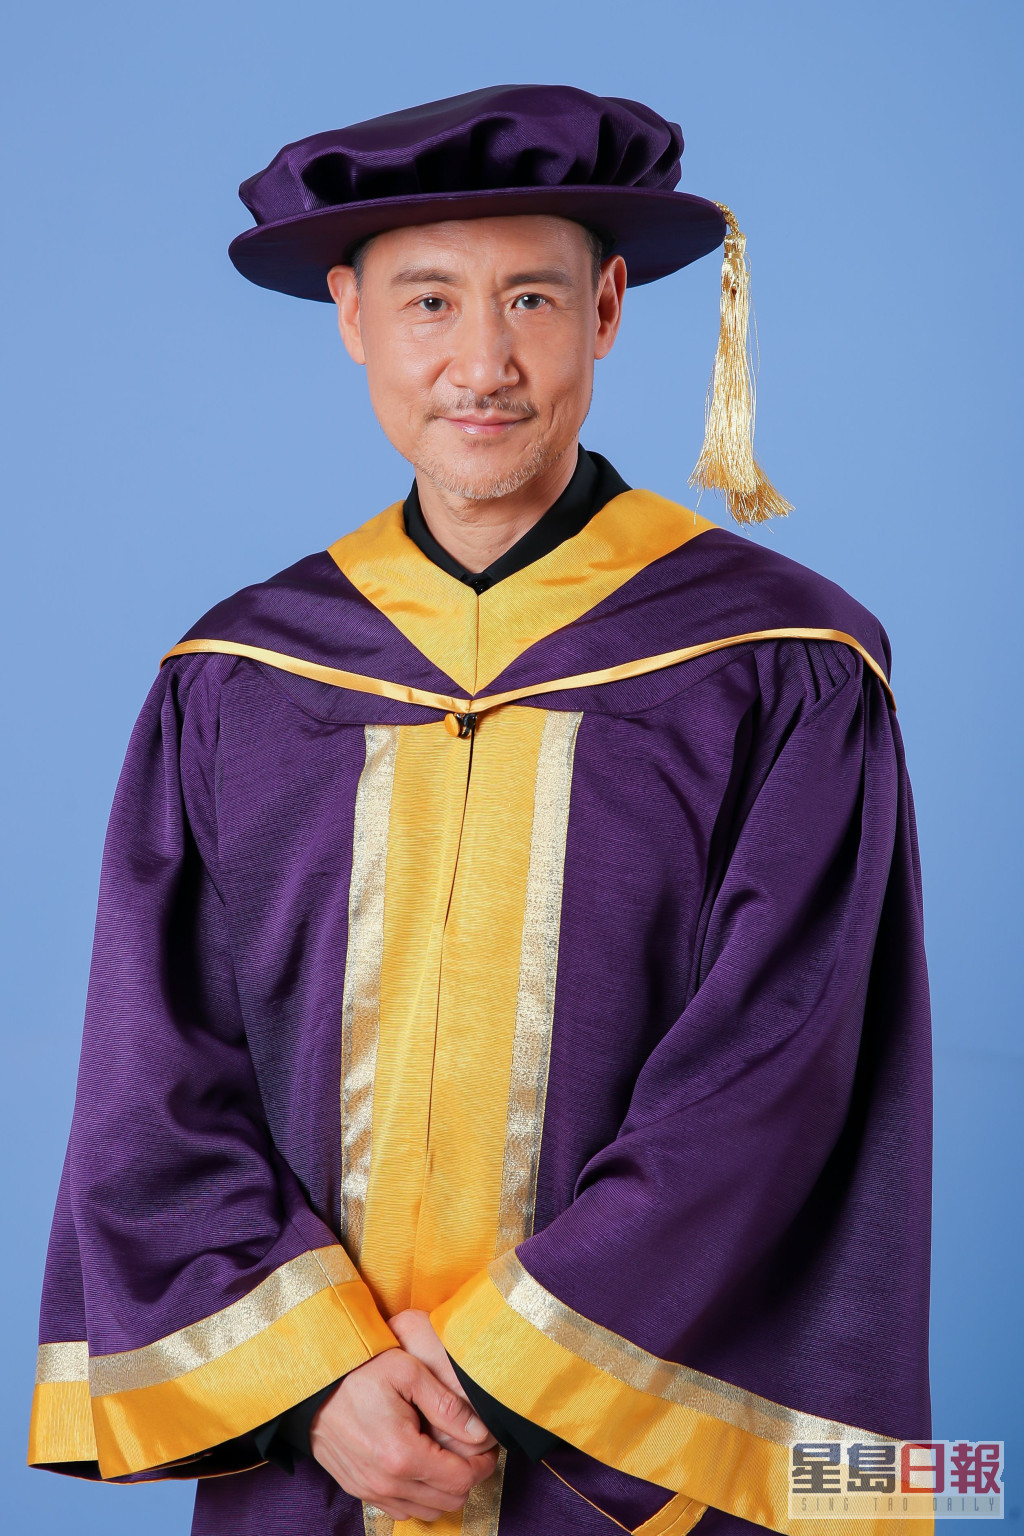 学友成就不止唱歌，香港演艺学院曾颁授荣誉博士暨荣誉院士给他。